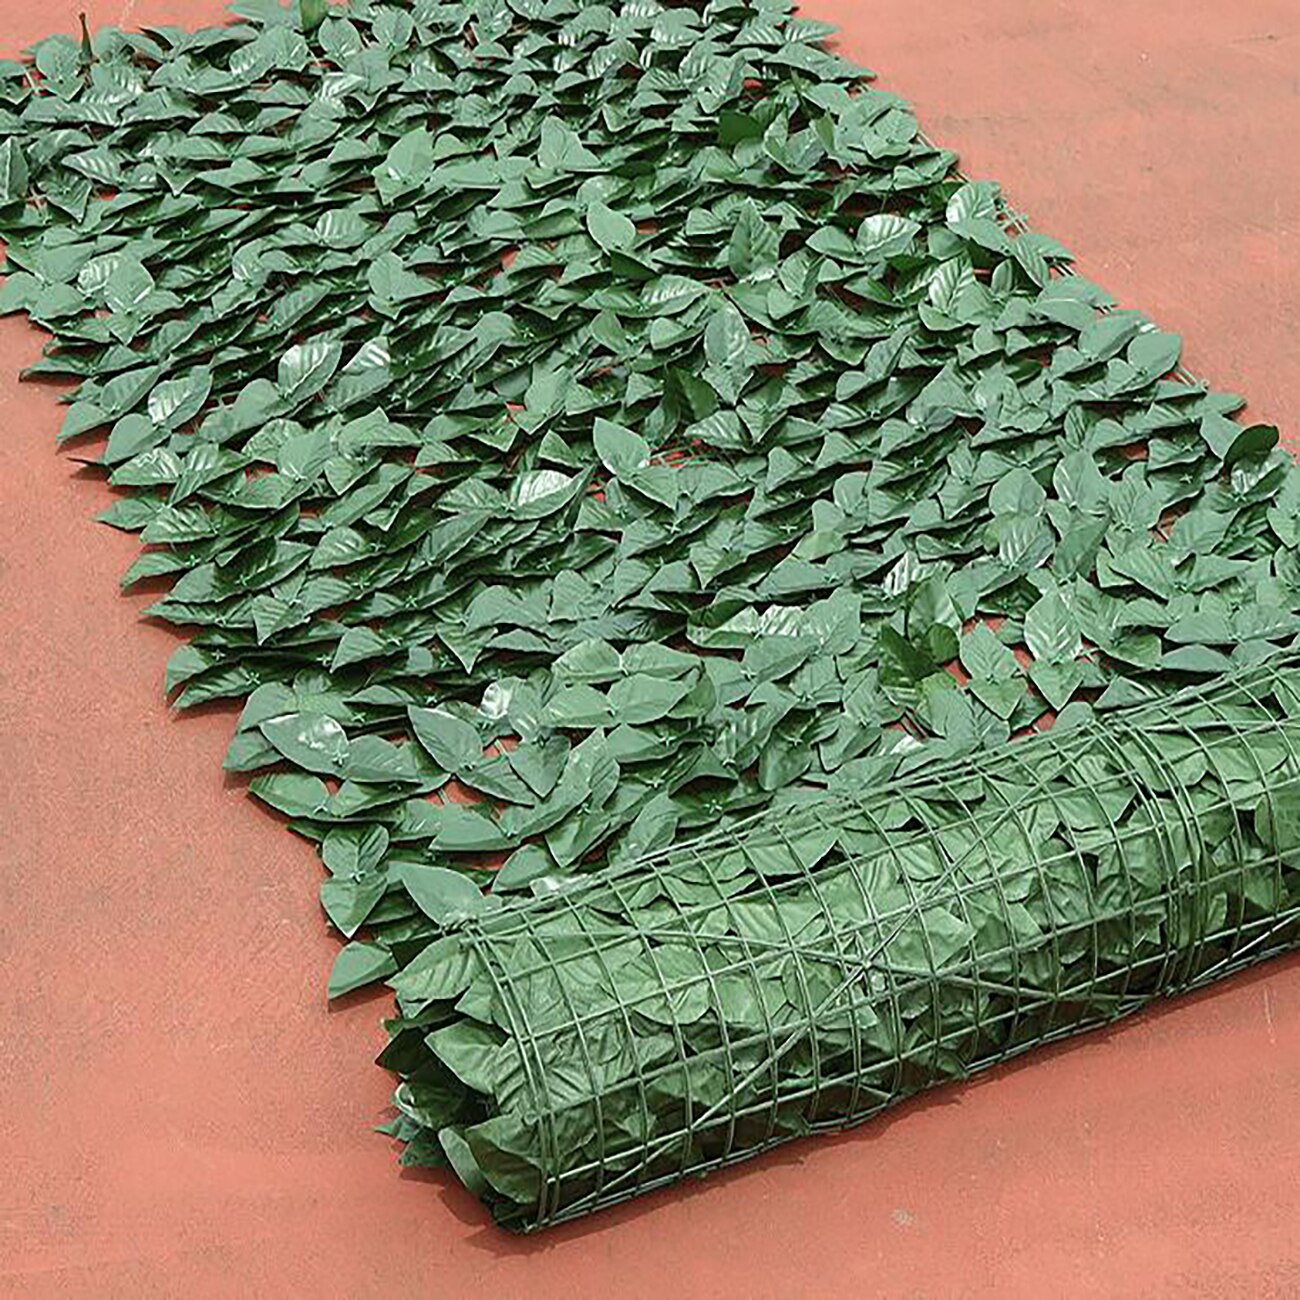 0.5*1m kunstige blade hæk hegn plast kunstige hængende vedbend diy væg altan indretning grønne blade haven baghave grønne: D